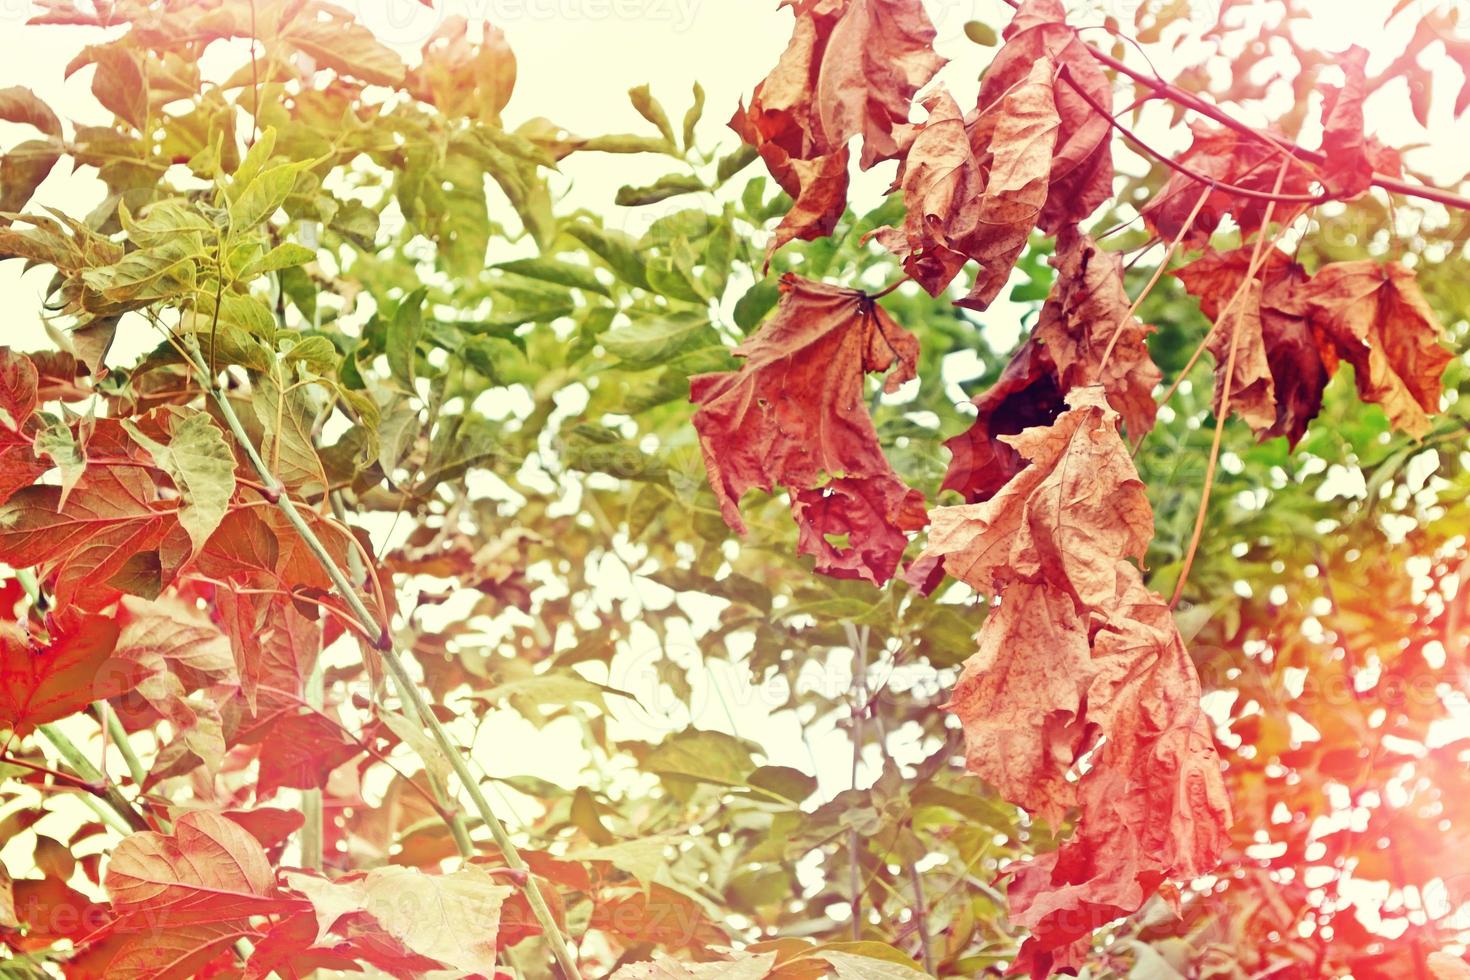 Herbstlandschaft mit leuchtend buntem Laub. Indischer Sommer. foto